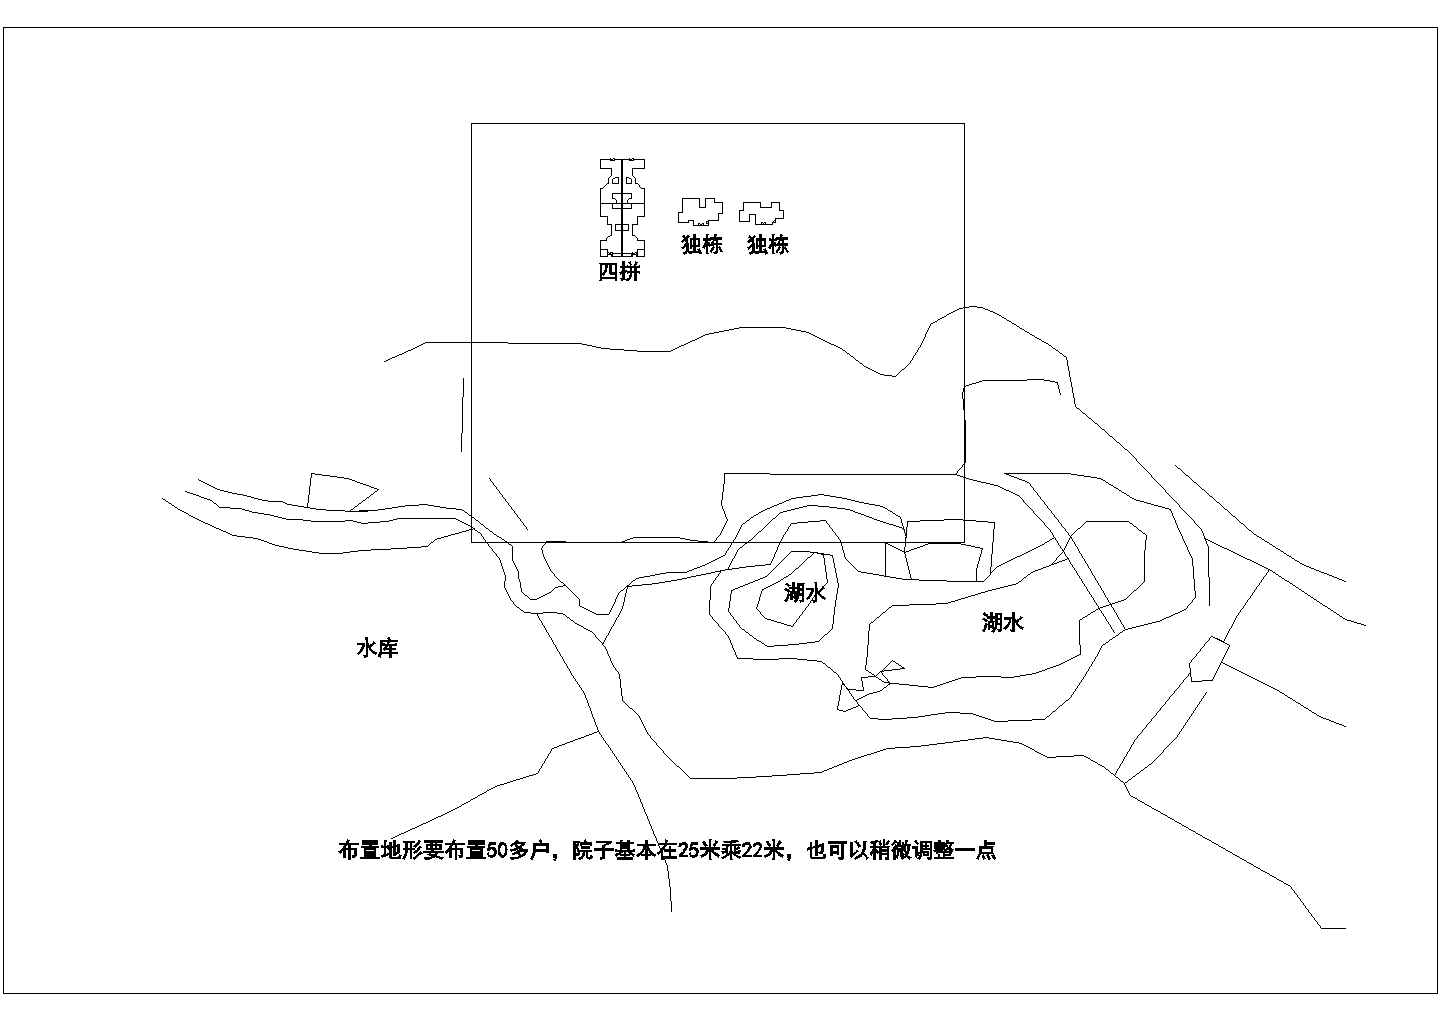 苏州农业生态园别墅全套施工设计cad图纸(含总平面图)